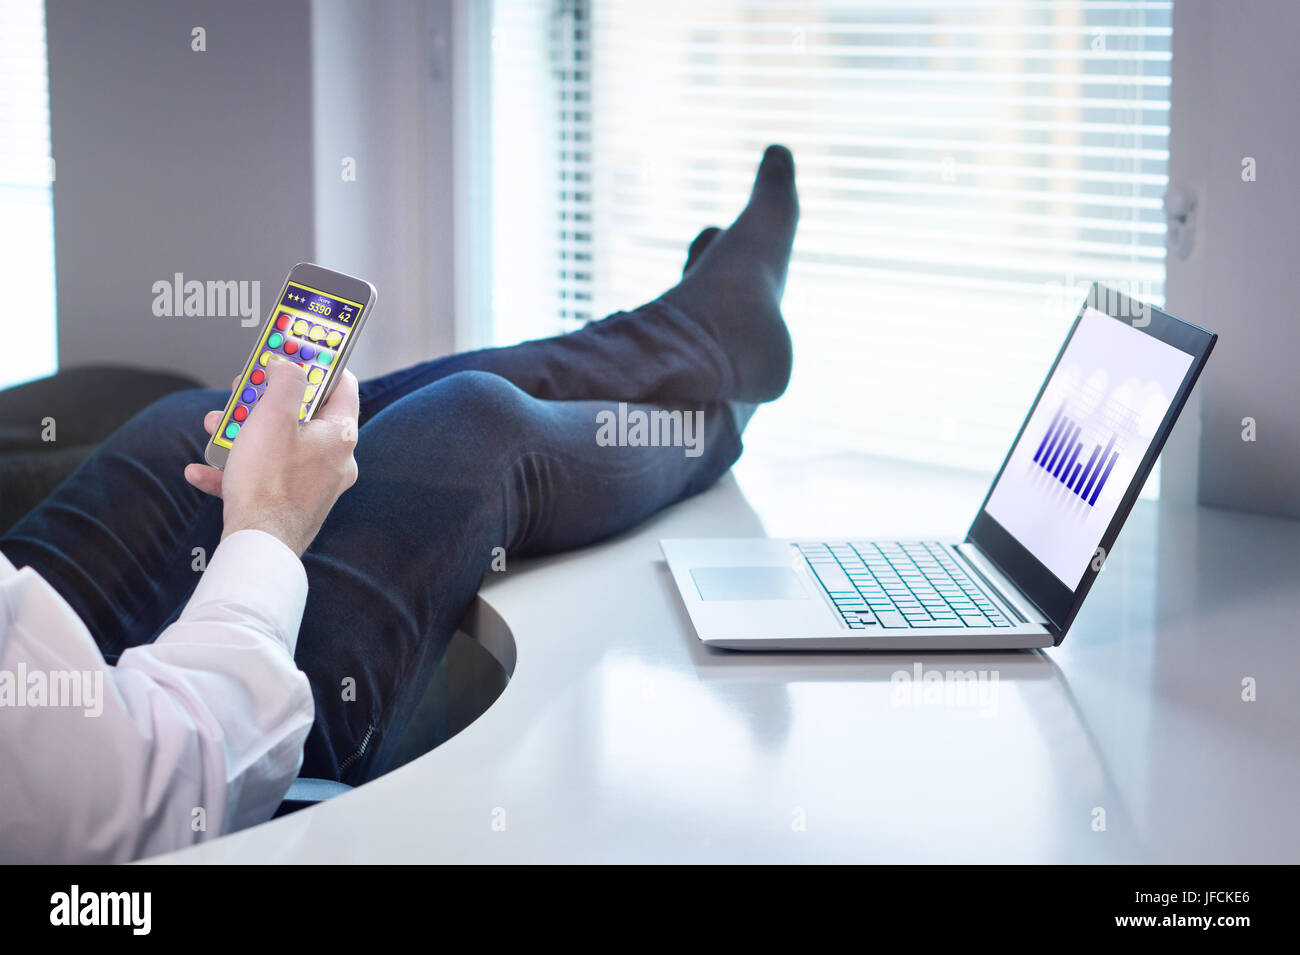 Faul, Büroangestellter mobile Spiel mit Smartphone während der Arbeitszeit. Seinen Job zu vermeiden und zu faulenzen mit Füße und Socken auf Tisch. Stockfoto